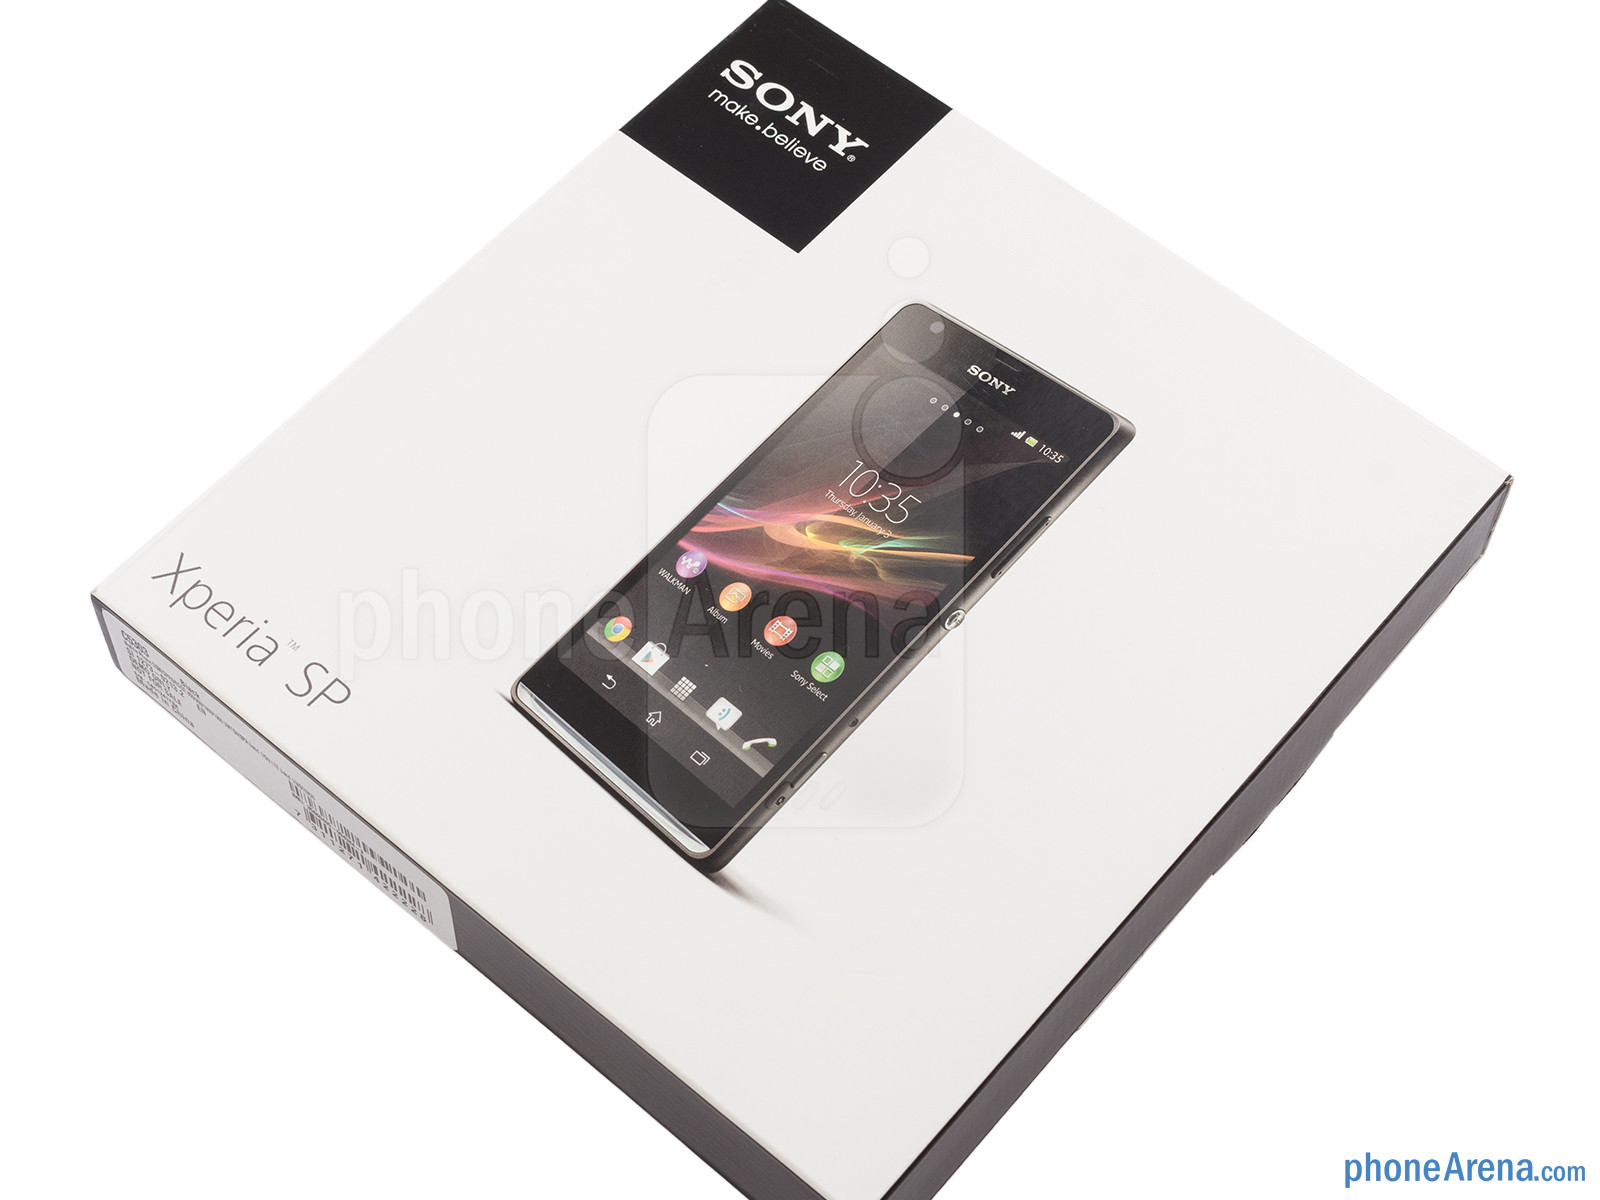 Sony Xperia SP: Cấu hình "ngon", thiết kế chắc chắn nhưng camera chưa tốt 2